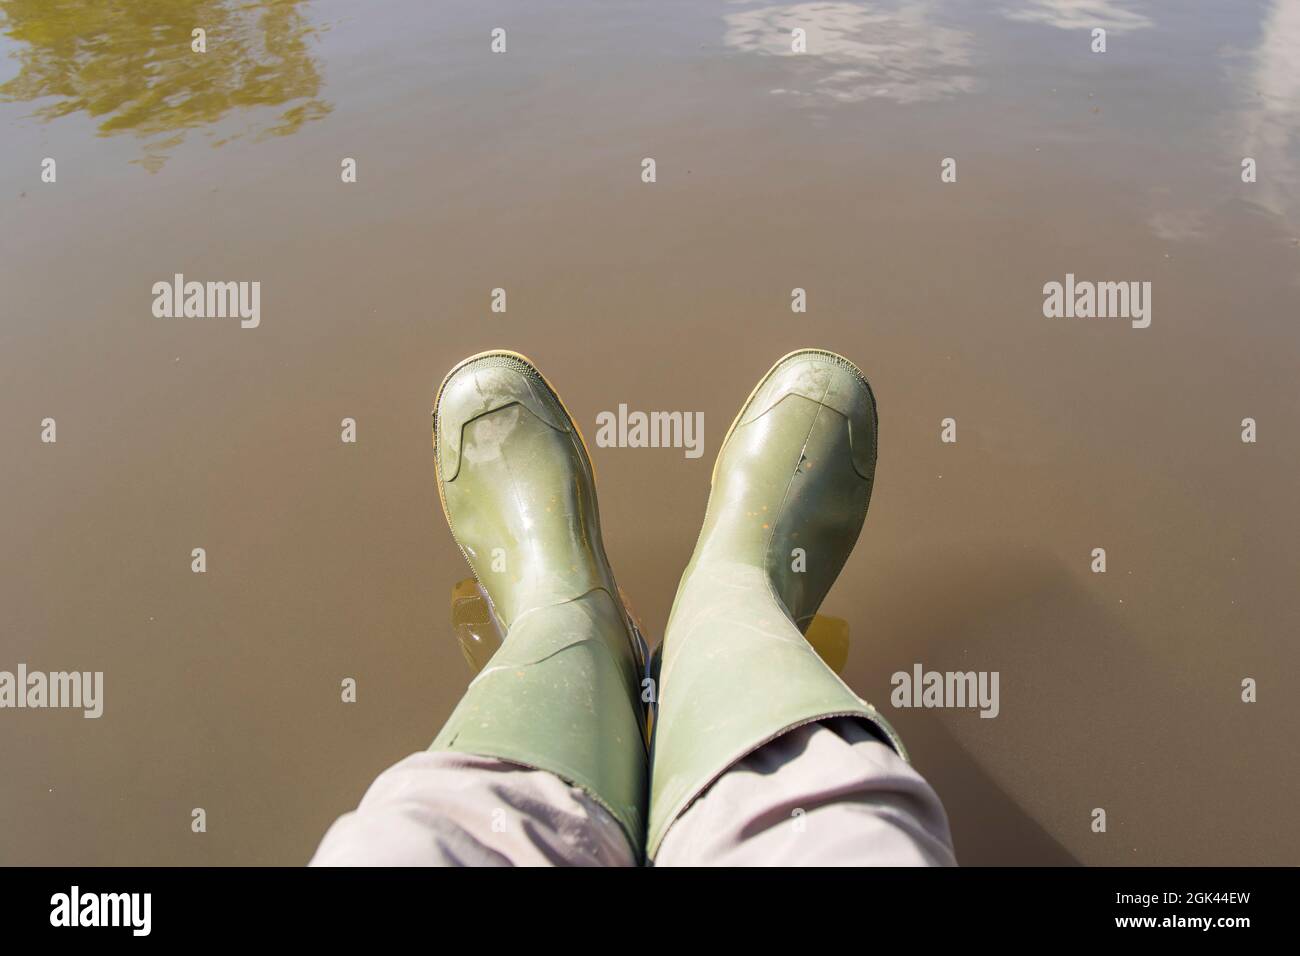 Draufsicht auf ein Paar grüne gummistiefel, die von einer Person über dem Wasser getragen werden. Stockfoto